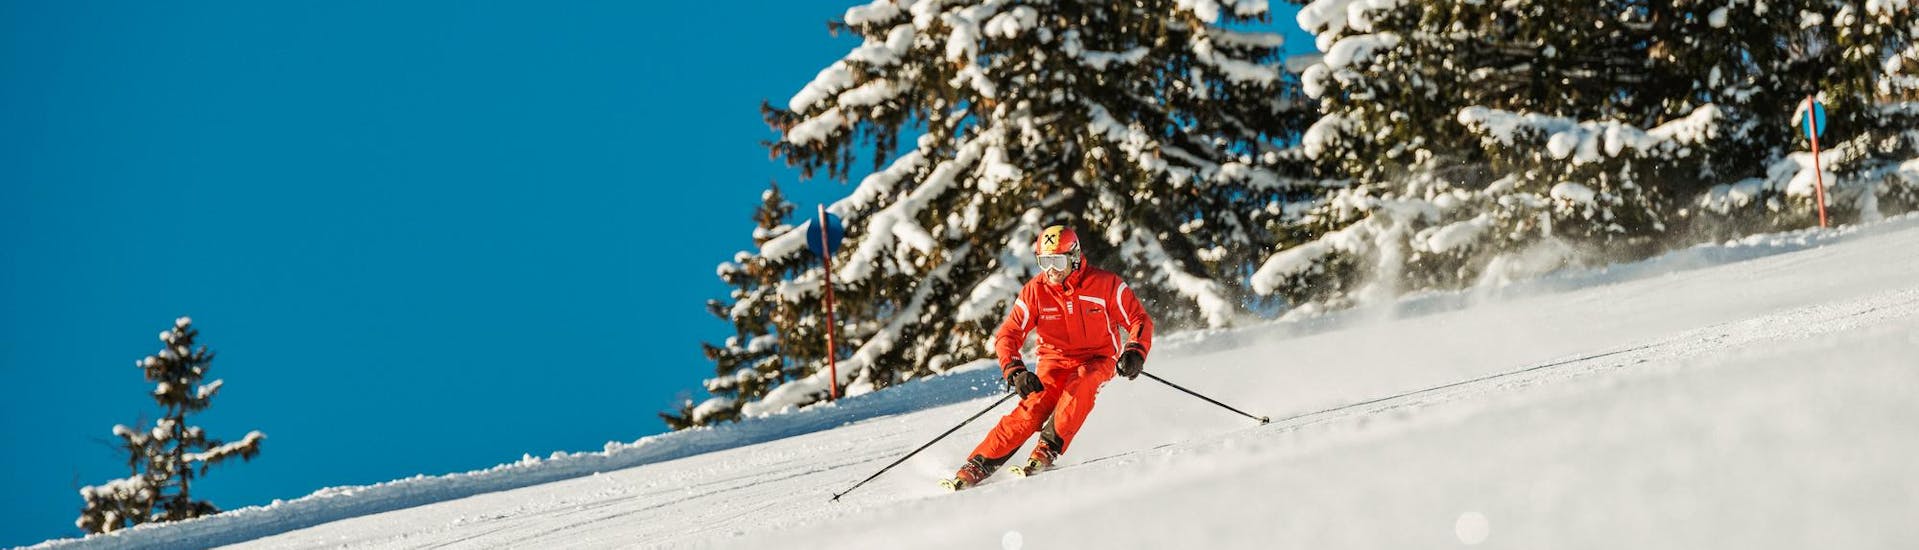 Een skiër daalt de prachtige pistes in het skigebied Achenkirch af tijdens de skilessen voor en volwassenen voor beginners met de Busslehner Achenkirch skischool.